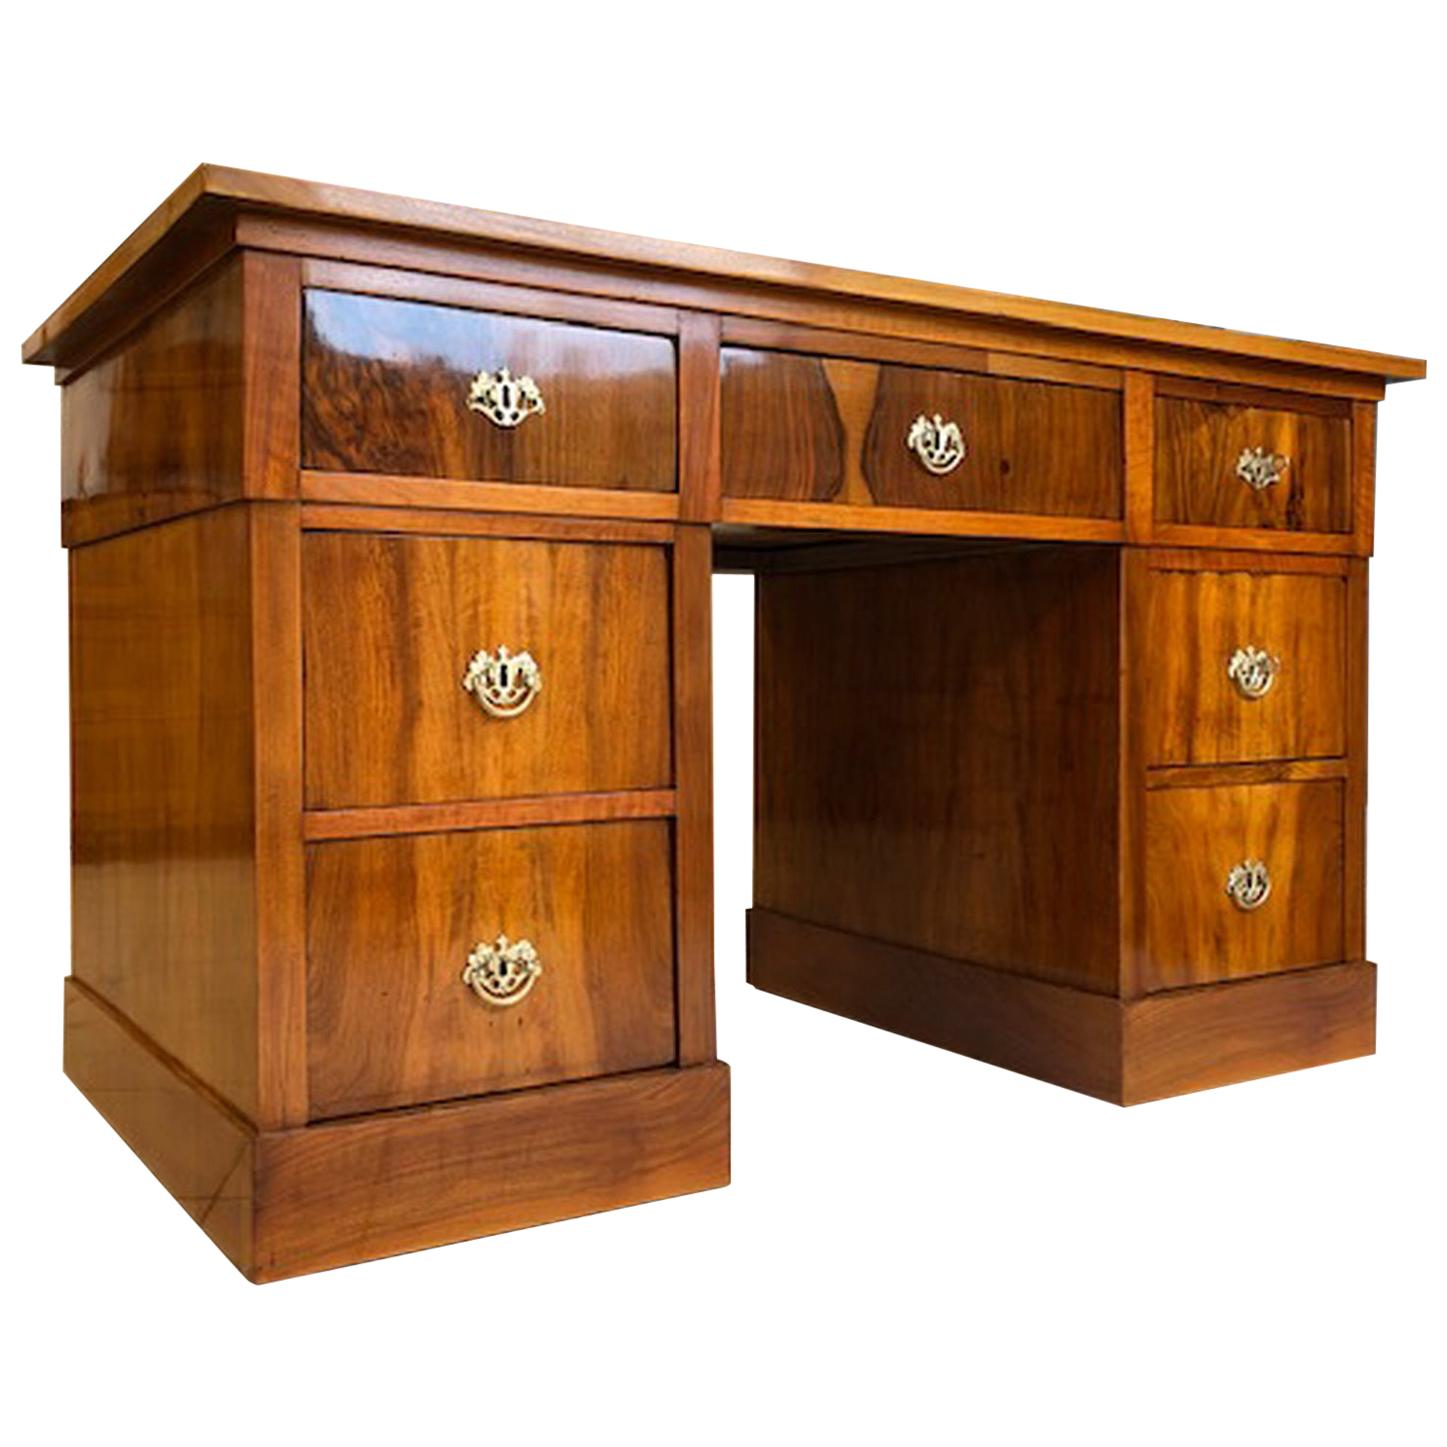 Original Restored Late Biedermeier Desk, circa 1865 For Sale